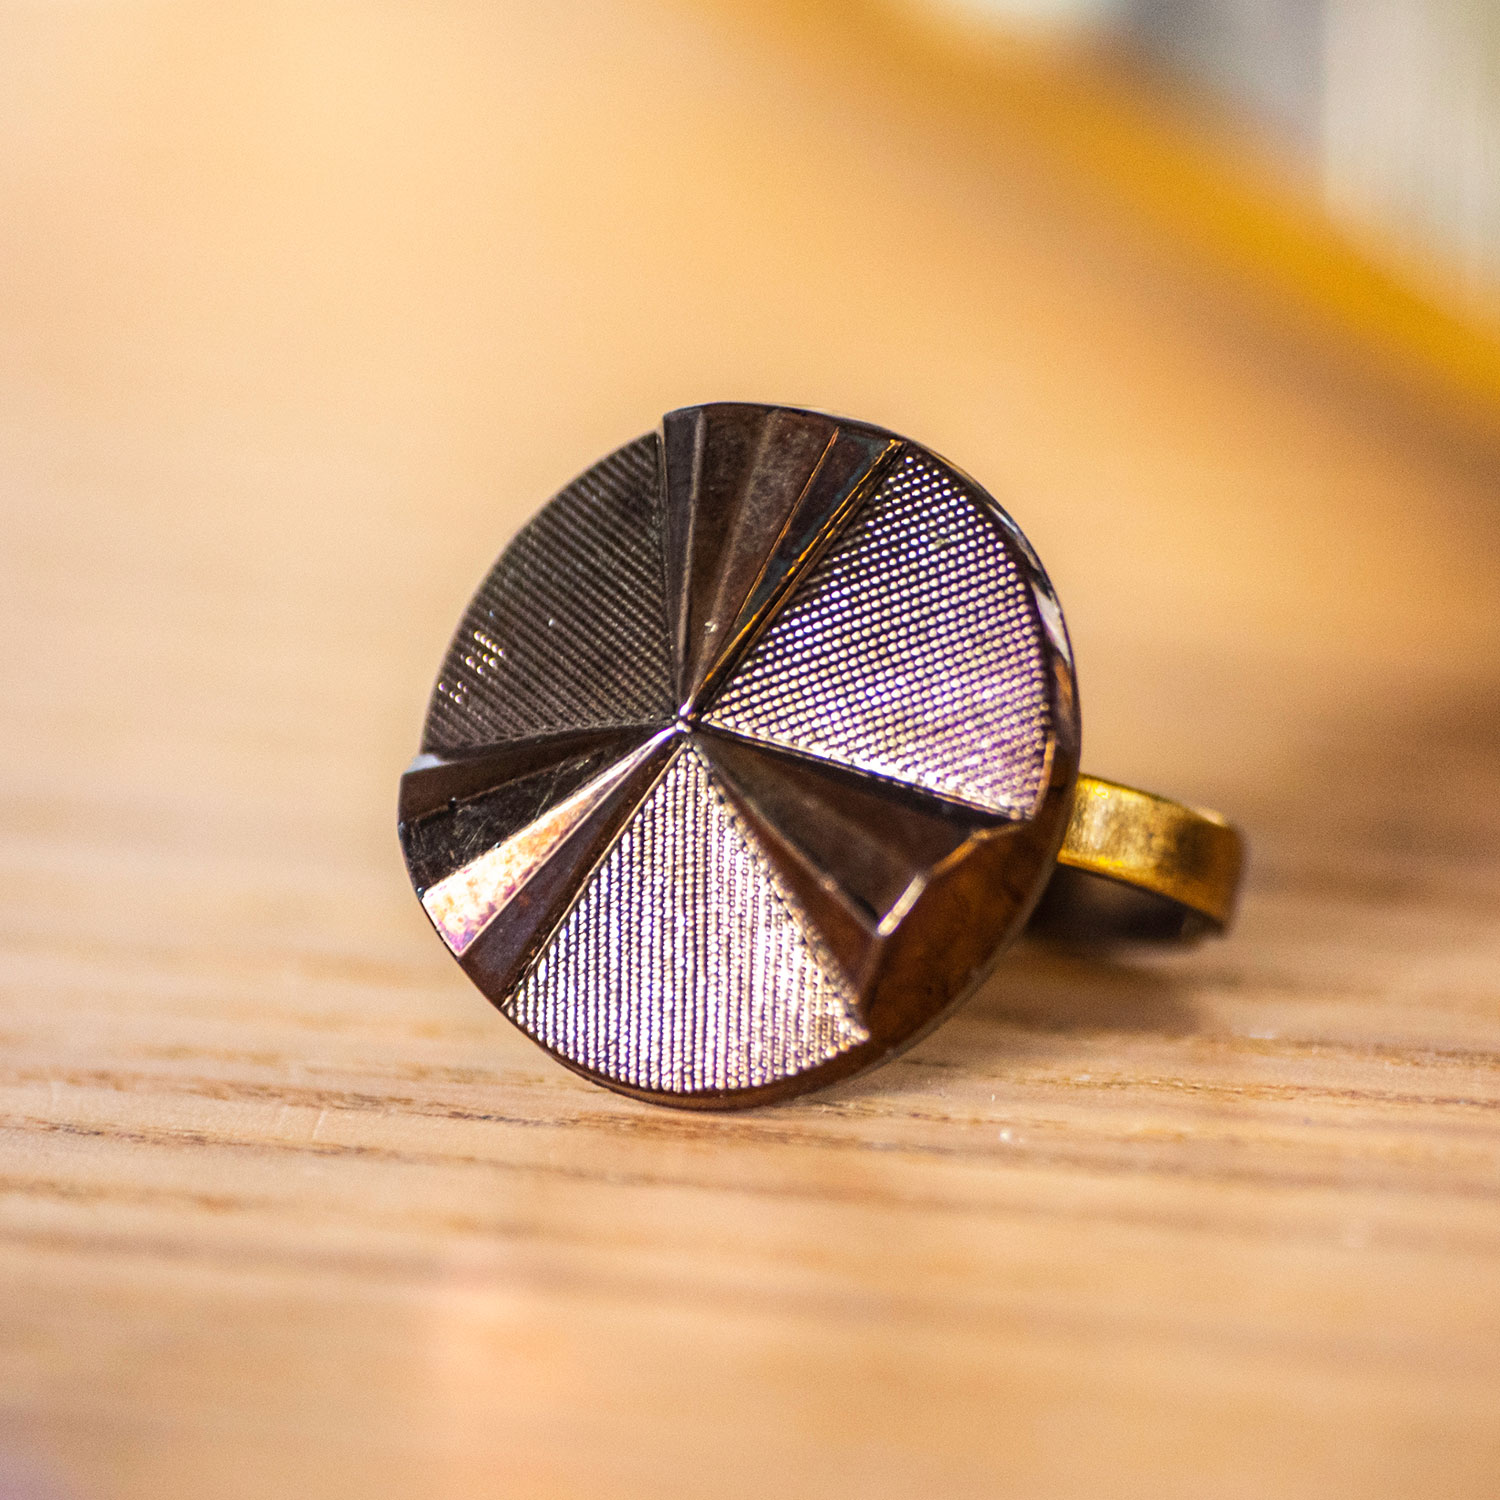 Assuna – zoom Bague Angèle bronze – bouton ancien – inspiration vintage